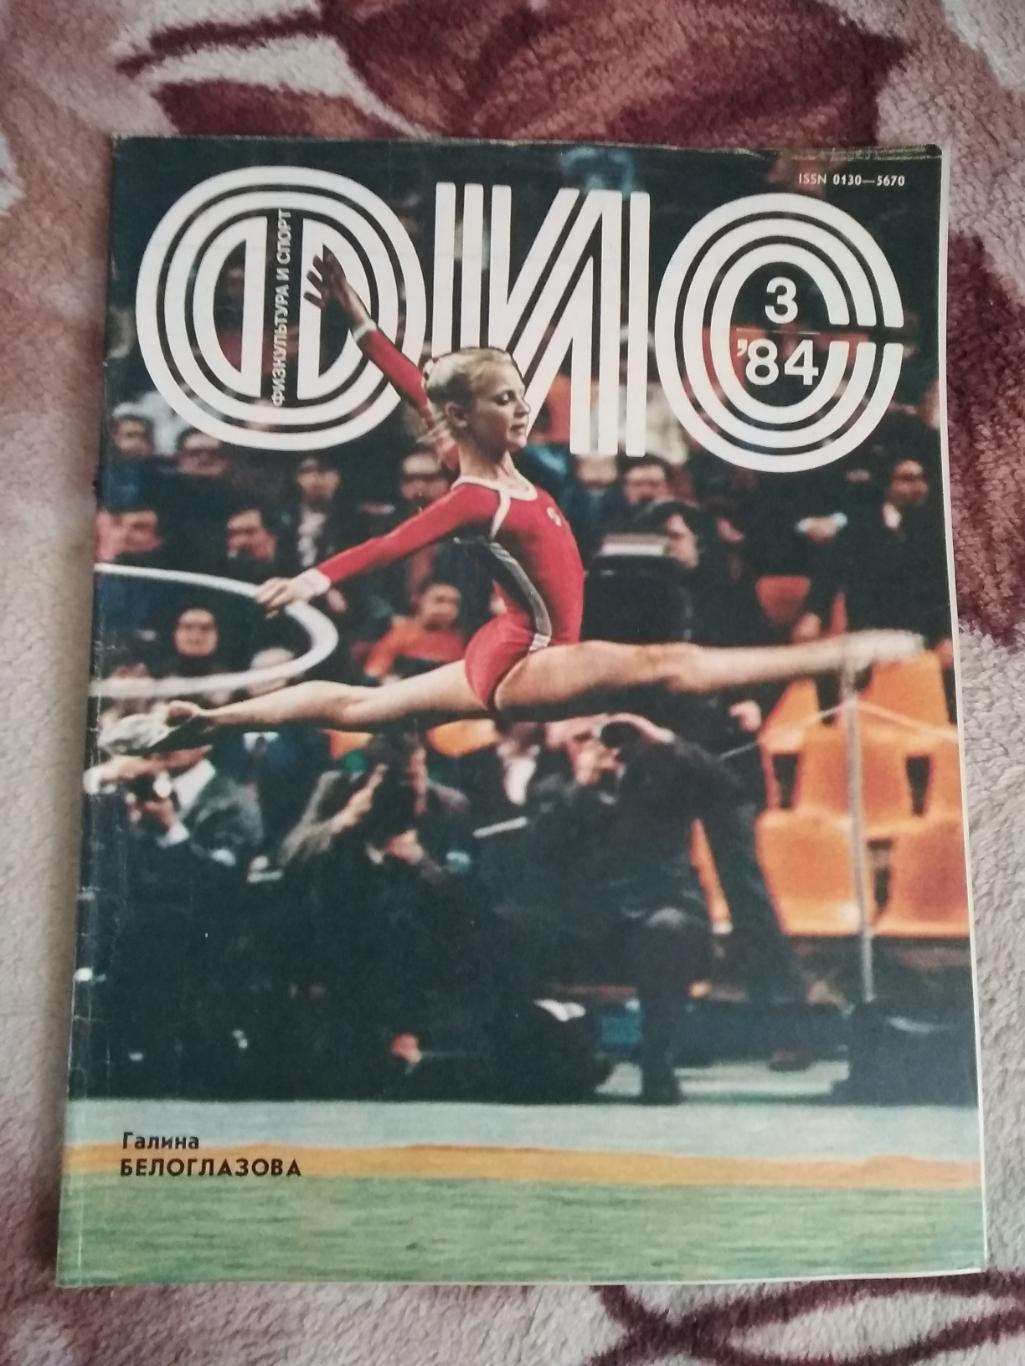 Журнал.Физкультура и спорт № 3 1984 г. (ФиС).